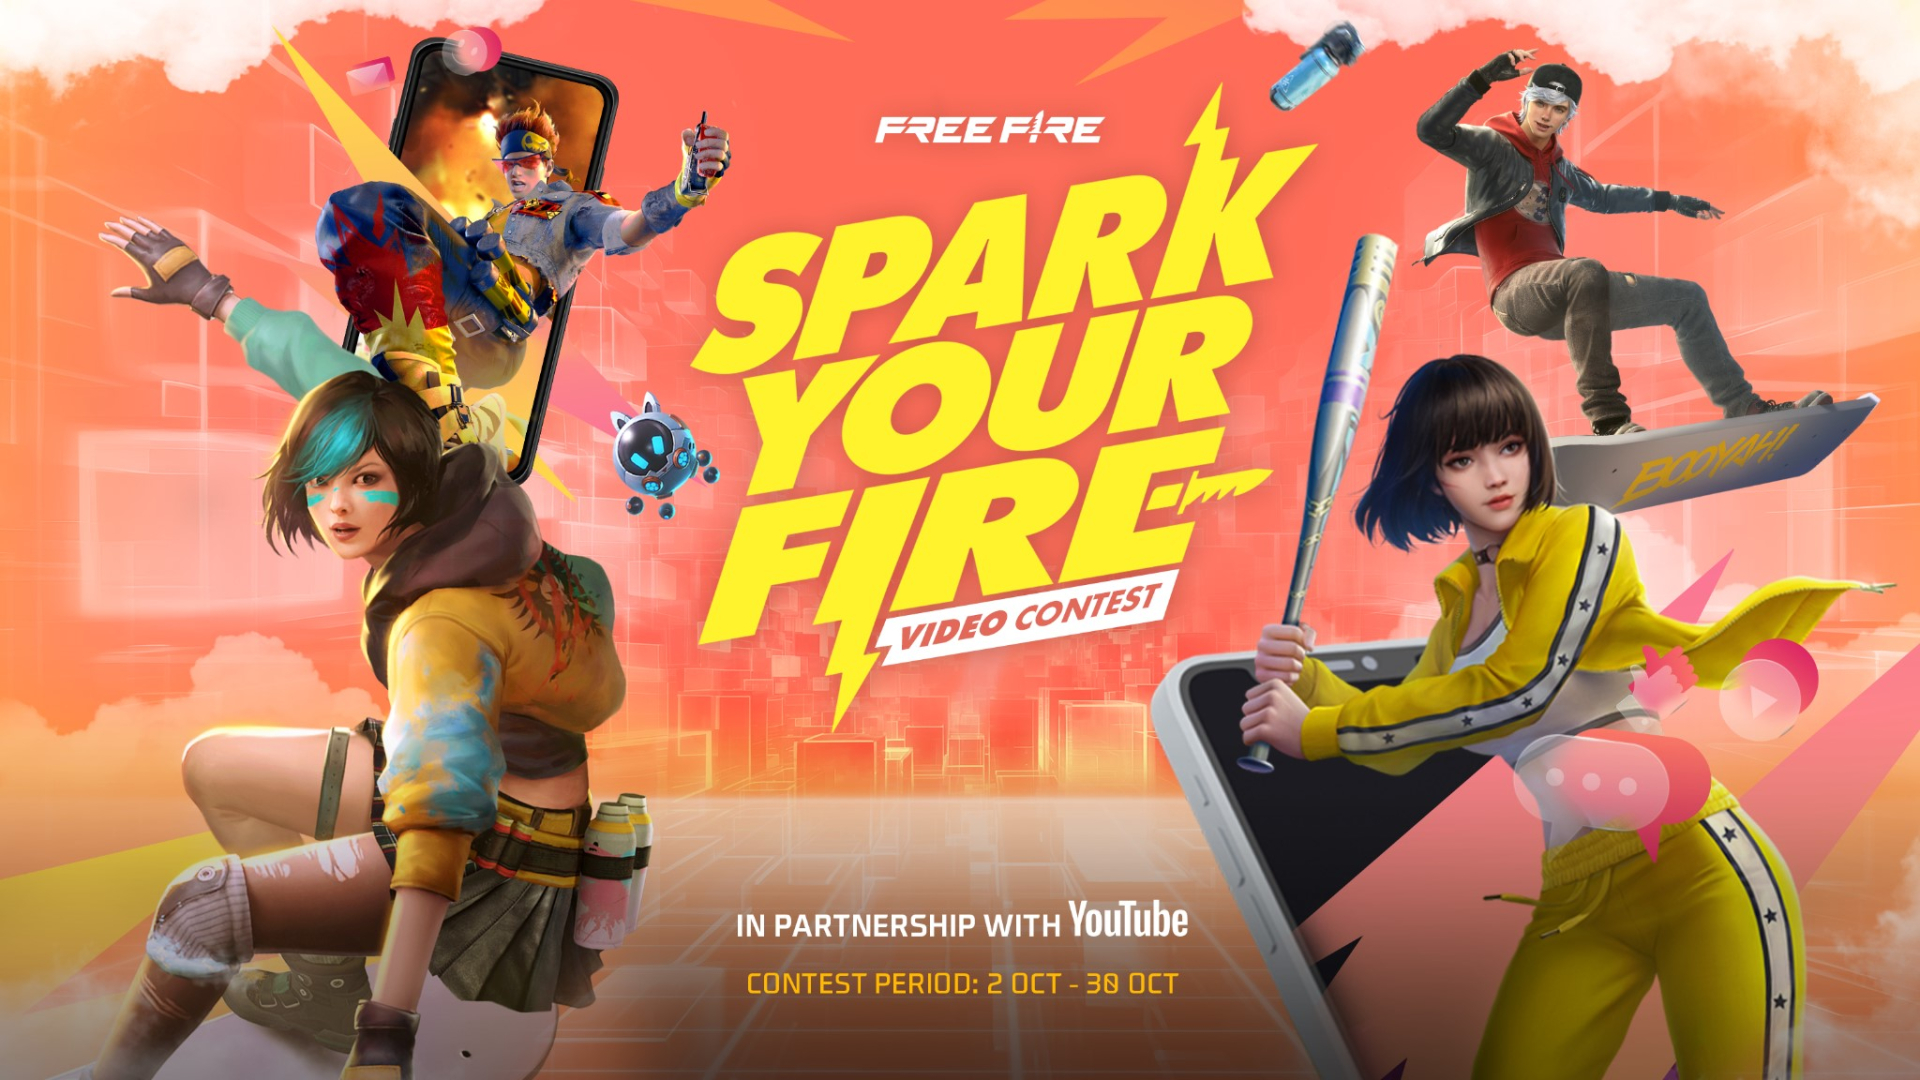 Free Fire đồng hành cùng Youtube công bố sân chơi vô tiền khoáng hậu dành cho nhà sáng tạo nội dung toàn Đông Nam Á - ảnh 2